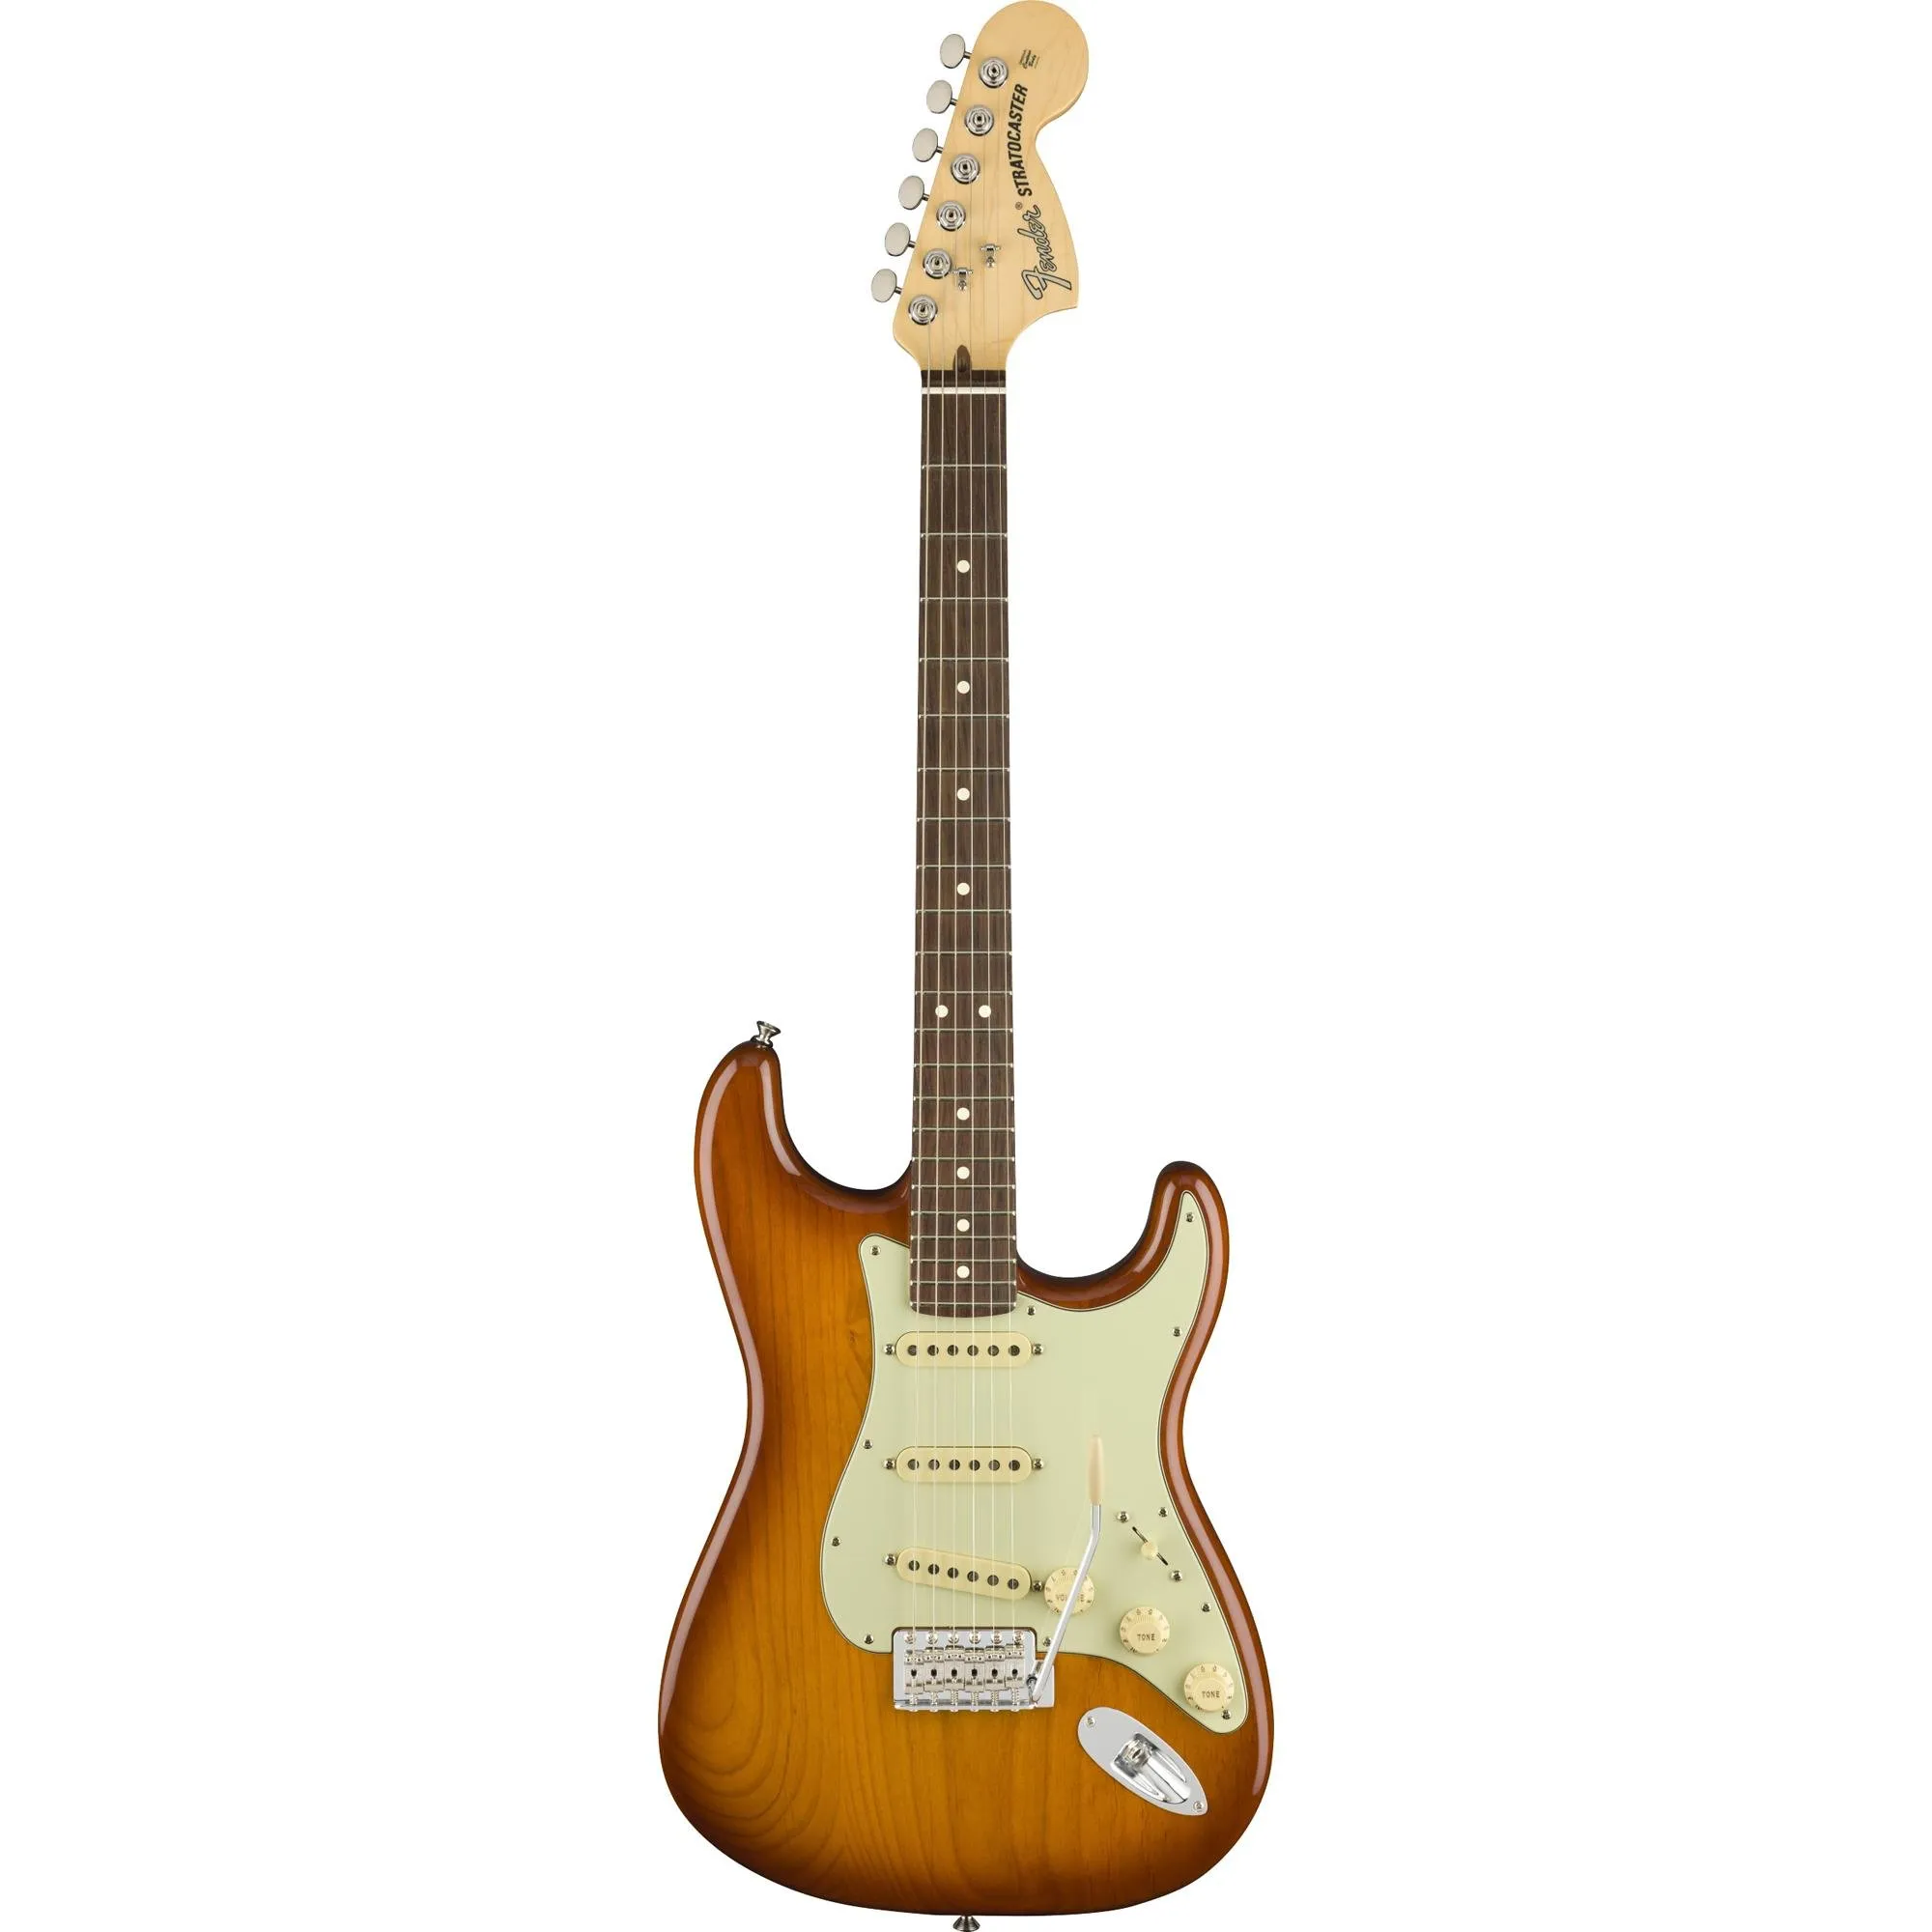 Guitarra Stratocaster Fender American Performer Honey Burst por 12.795,00 à vista no boleto/pix ou parcele em até 12x sem juros. Compre na loja Mundomax!